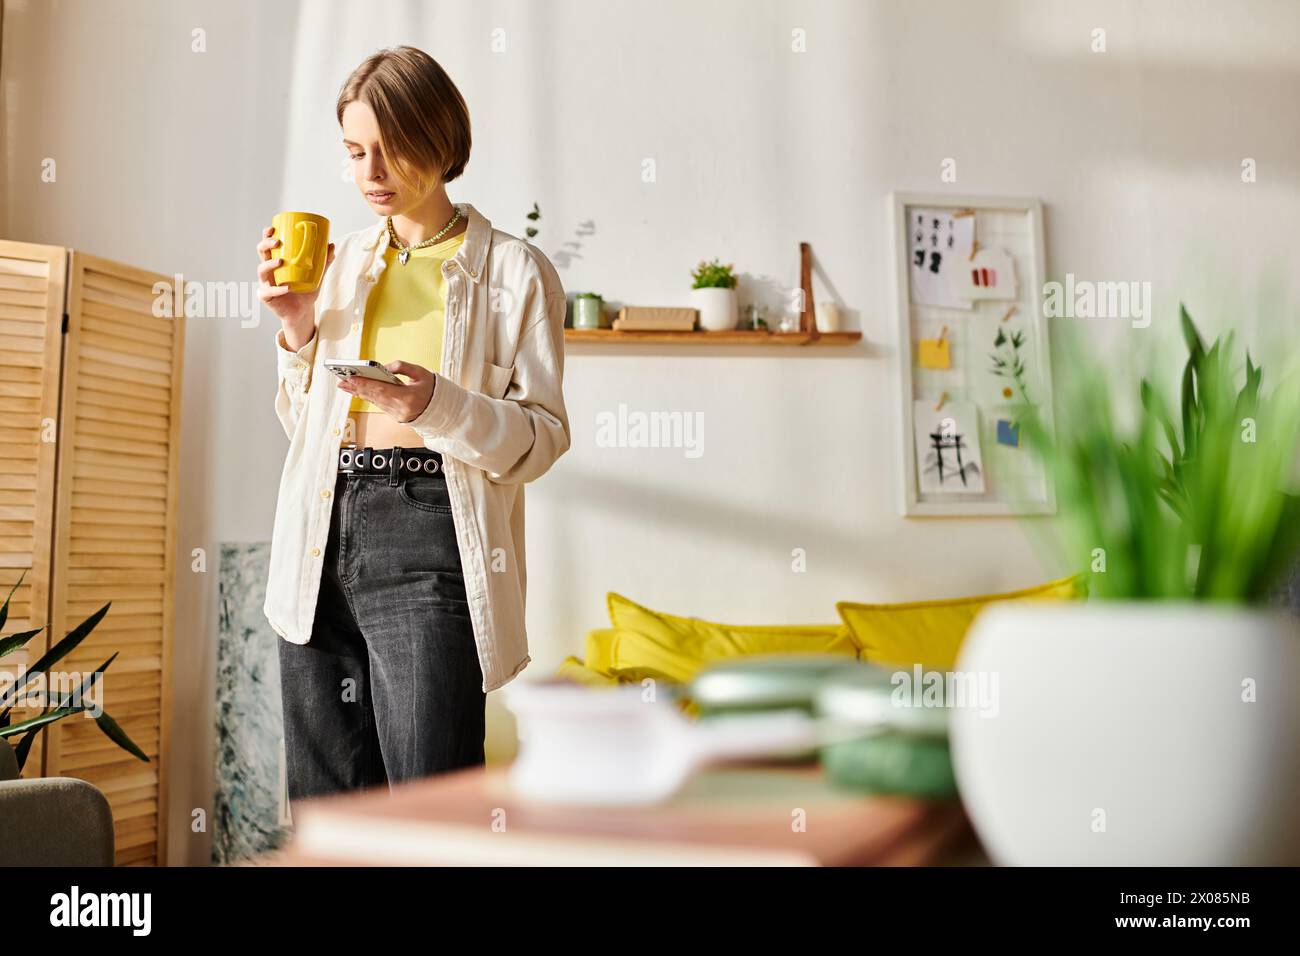 Ein heiterer Moment, als ein Teenager in ihrem gemütlichen Wohnzimmer steht und während ihrer E-Learning-Session eine Tasse Kaffee genießt. Stockfoto